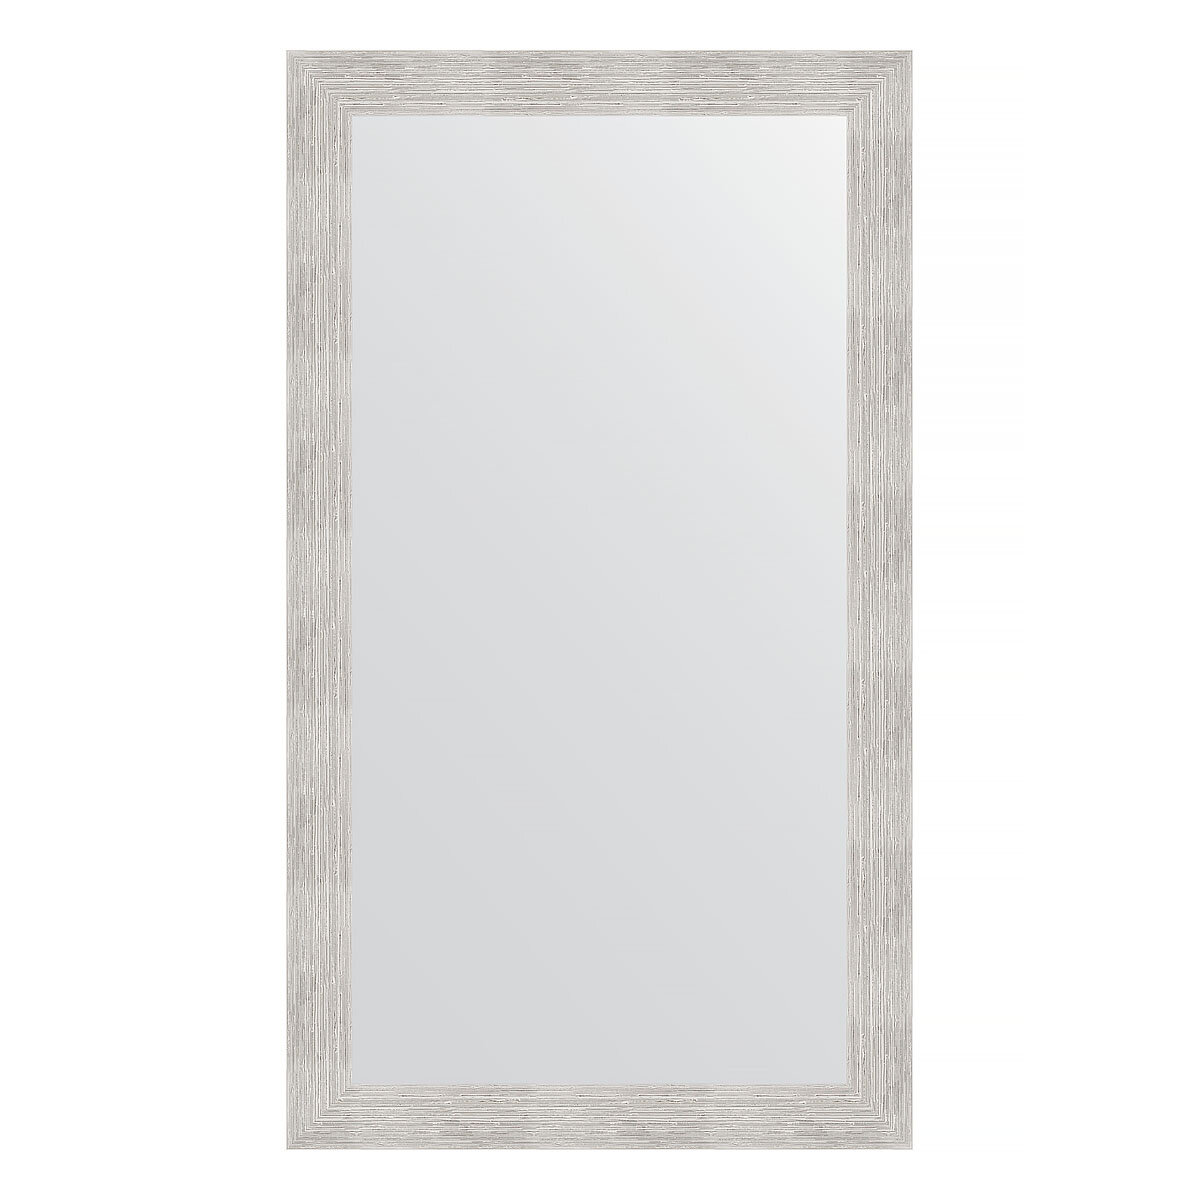 Зеркало настенное EVOFORM в багетной раме серебряный дождь, 66х116 см, для гостиной, прихожей, кабинета, спальни и ванной комнаты, BY 3208